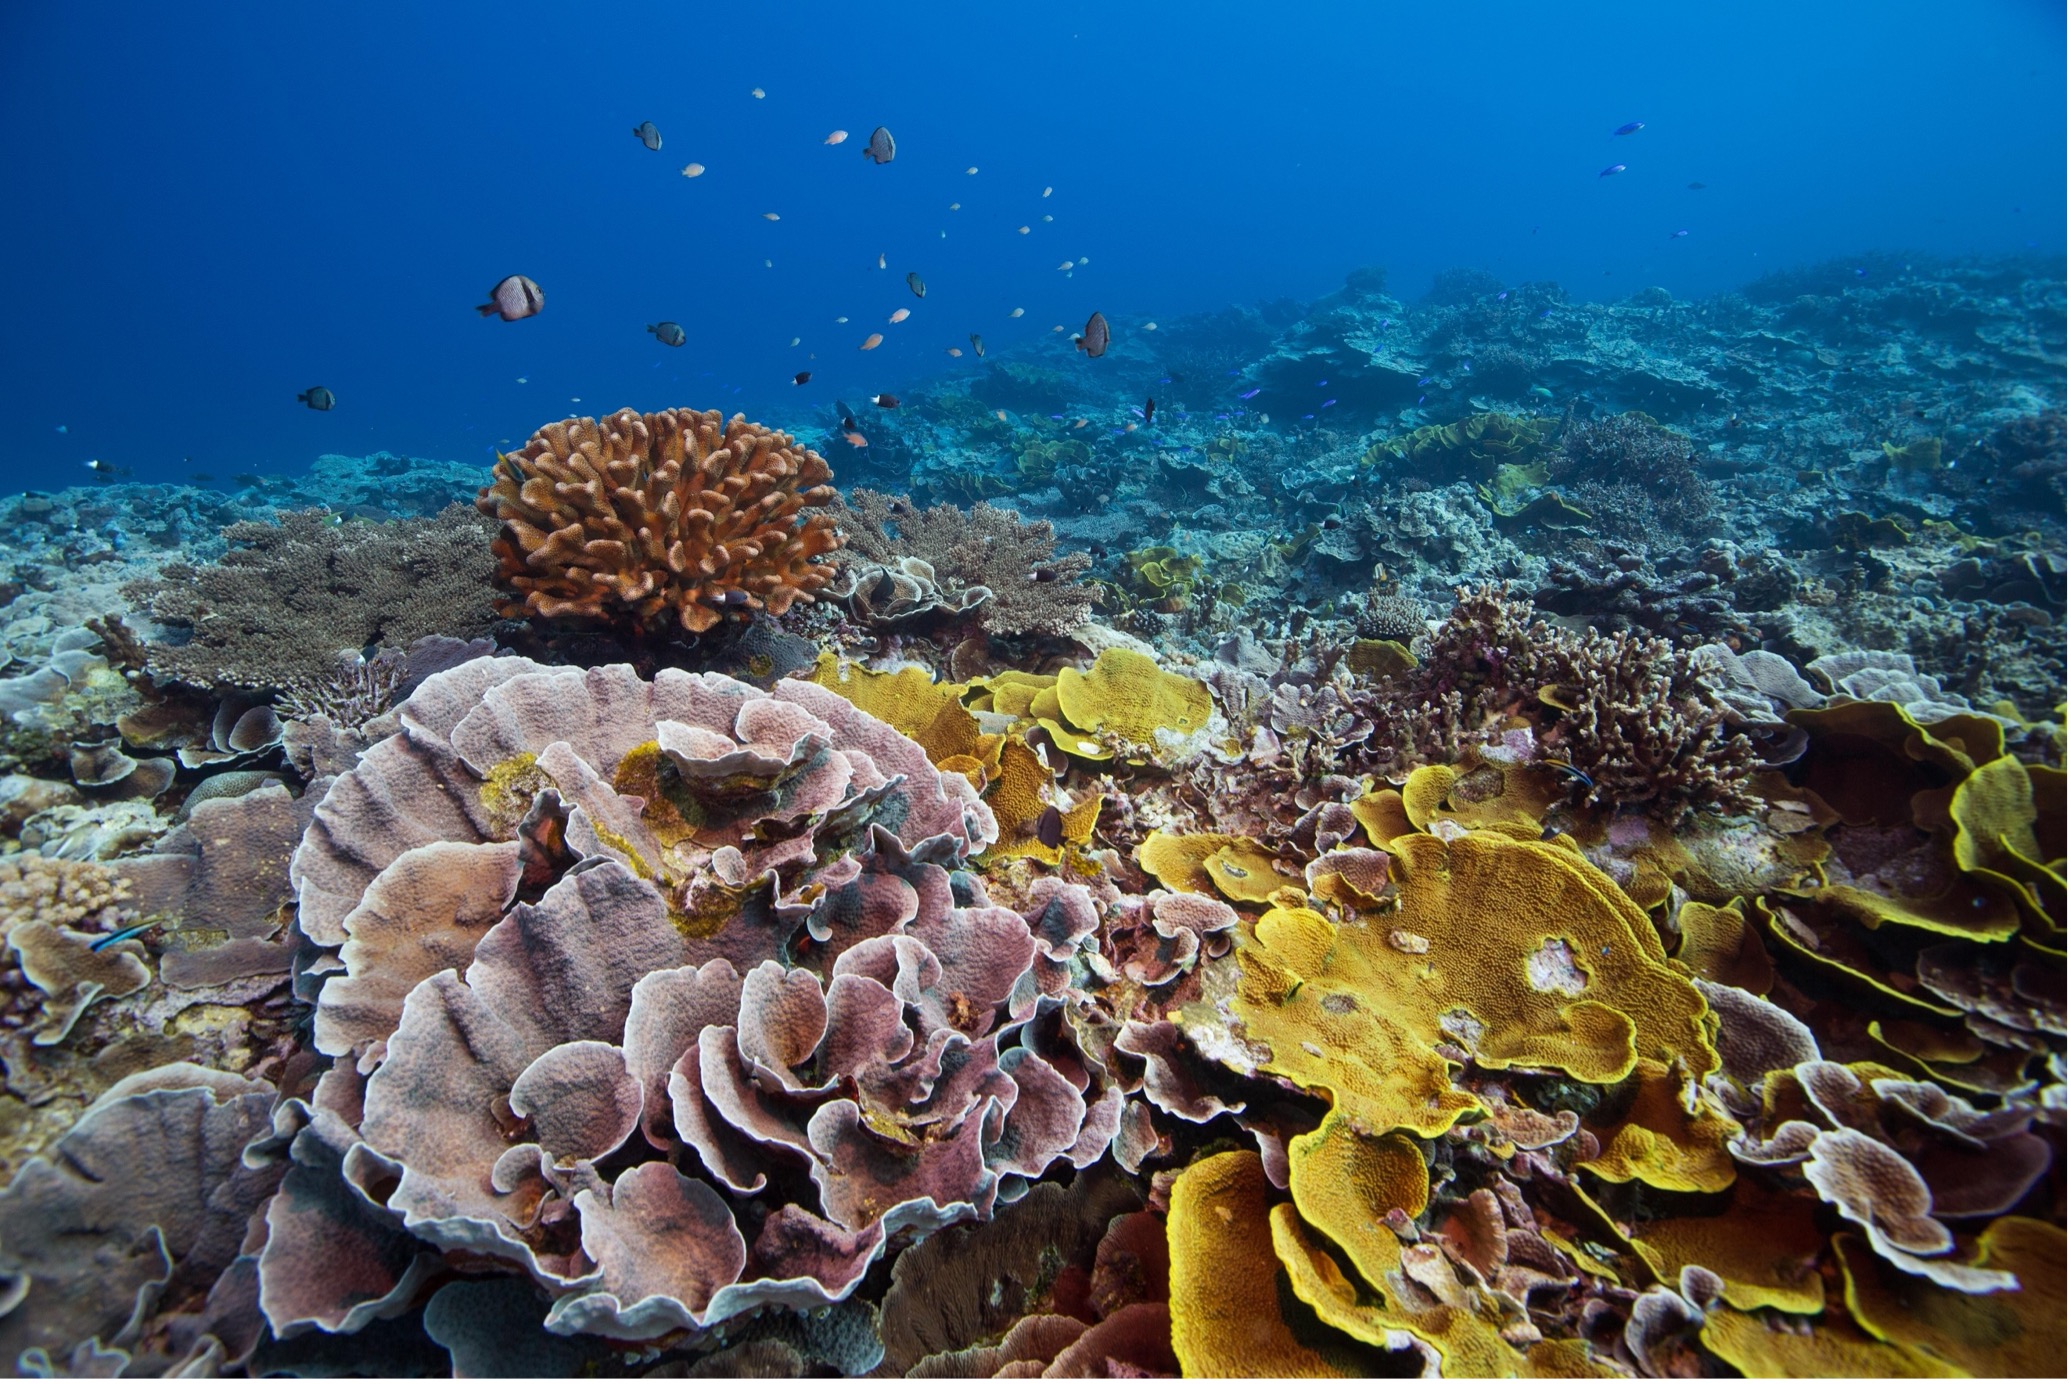 แนวปะการังที่หลากหลายและยืดหยุ่นใน Yap, Micronesia โดย ทิม คาลเวอร์